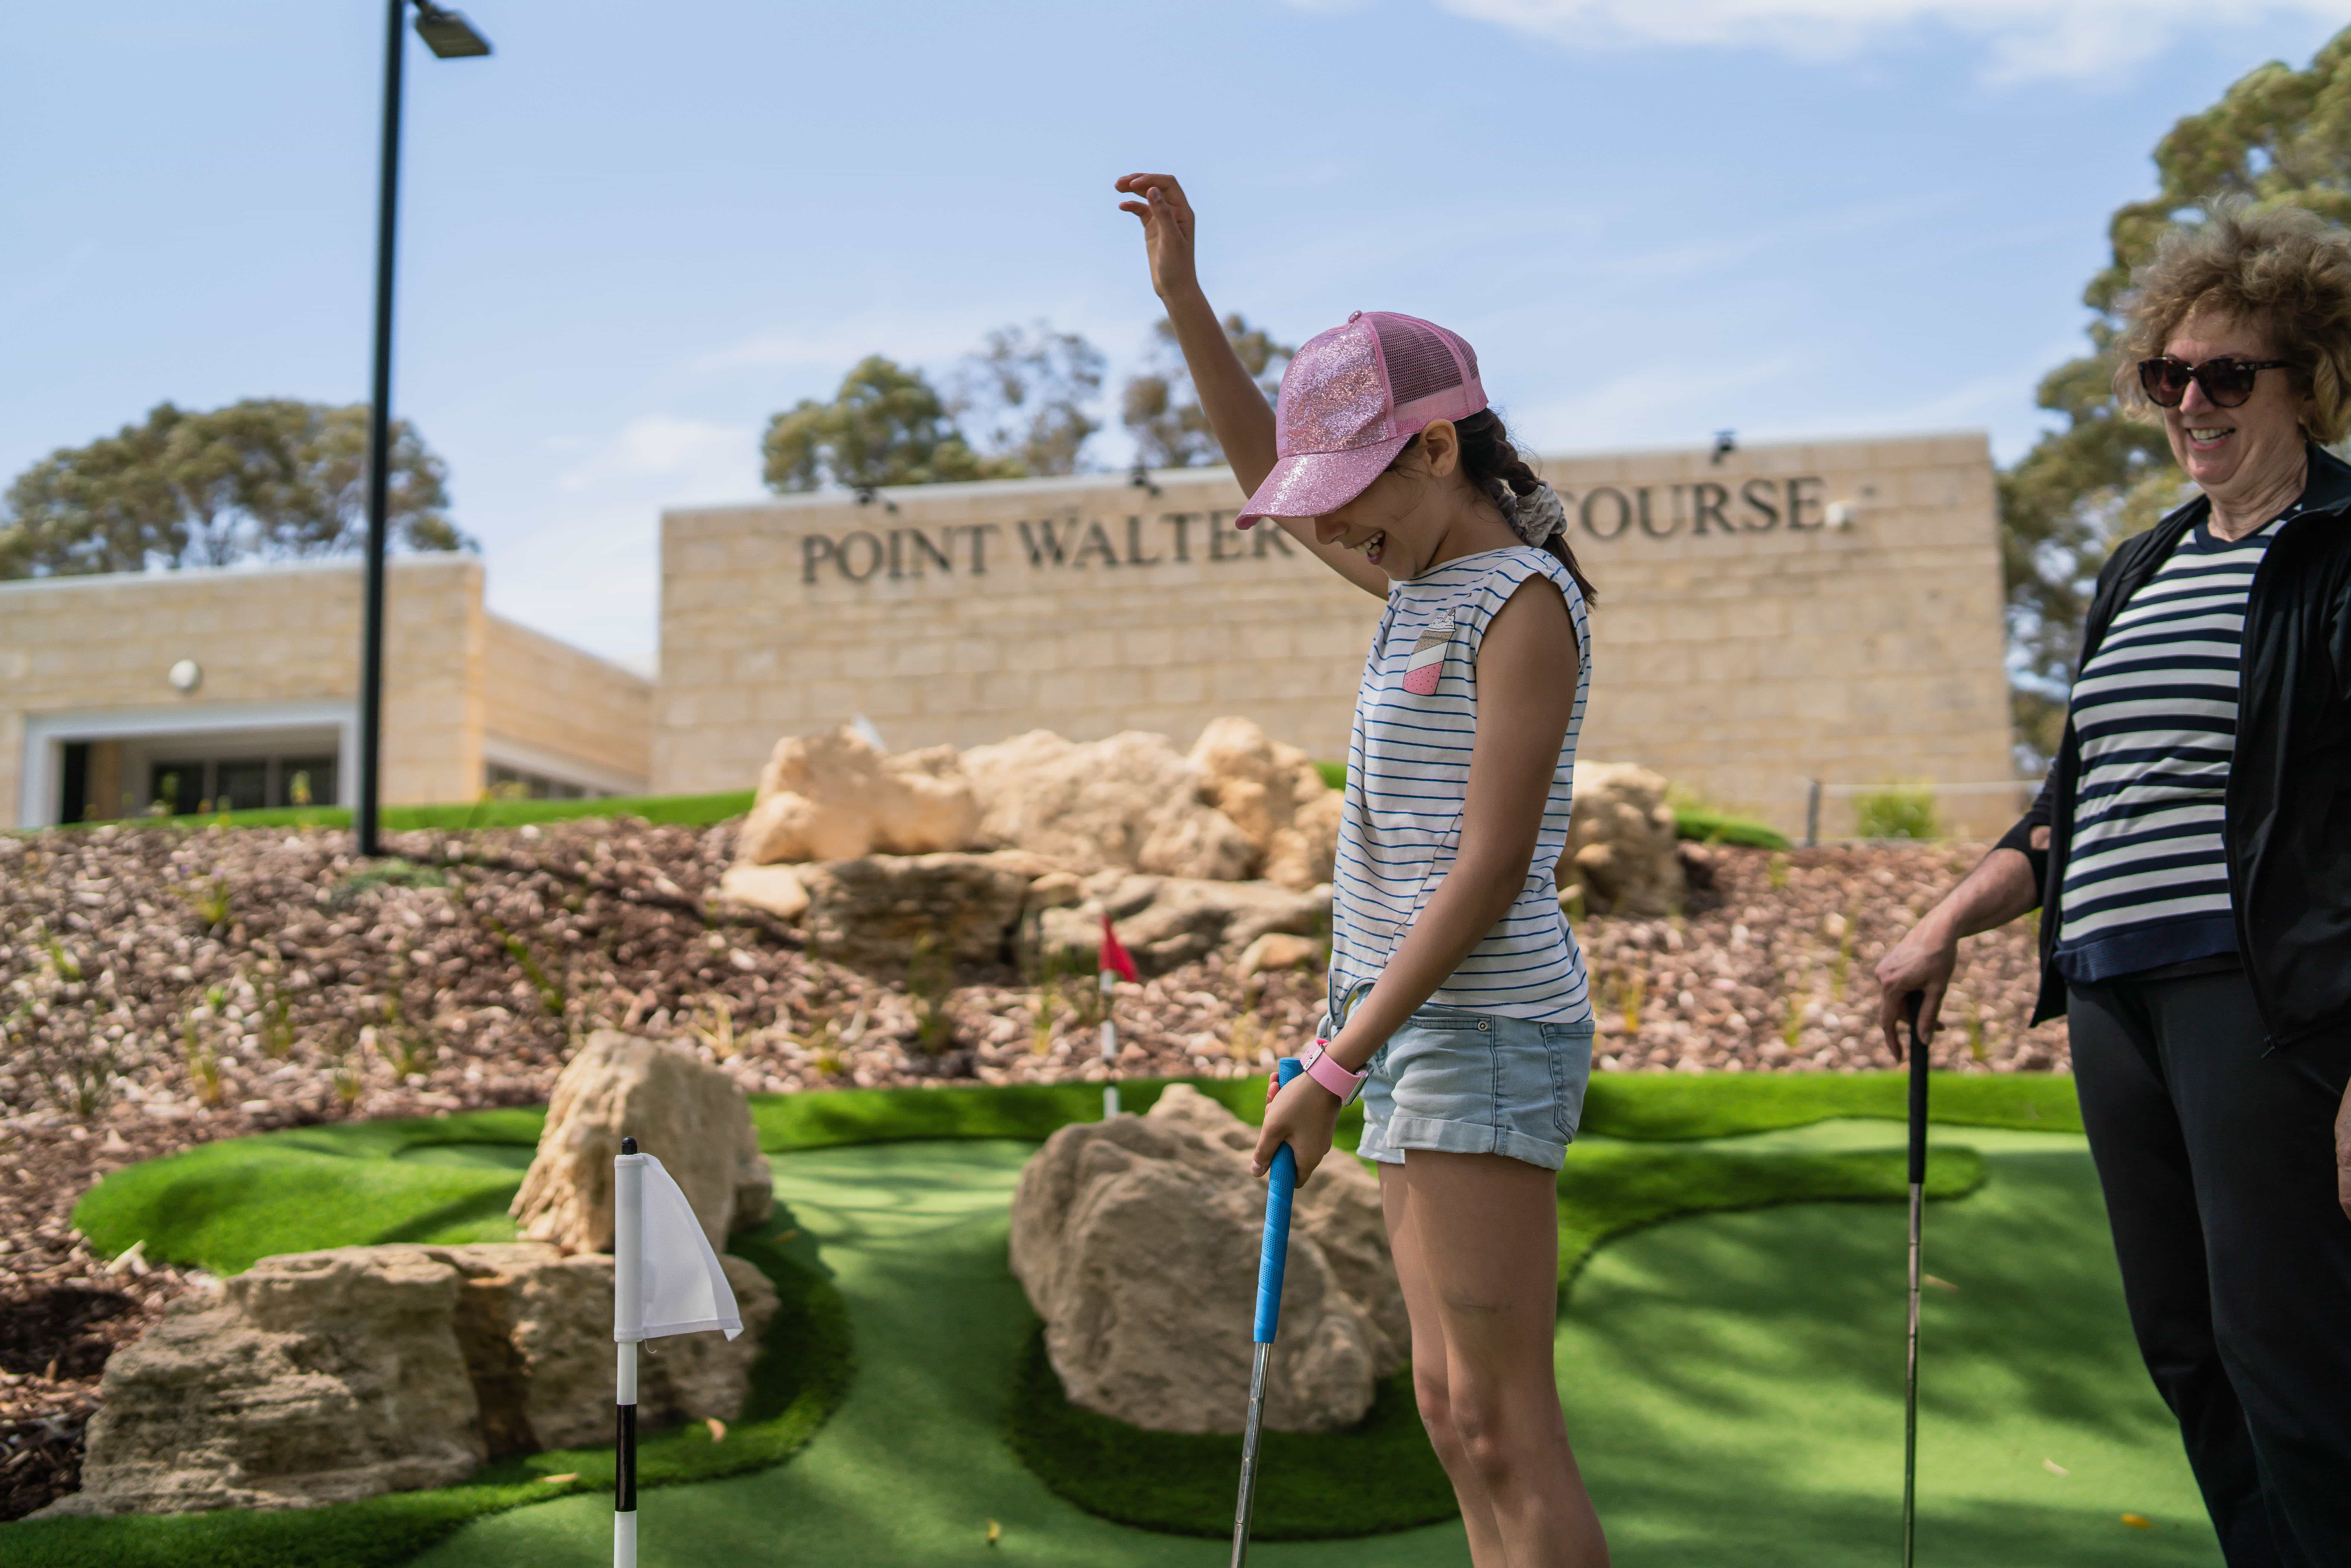 Mini Golf Perth Kids activities fun put put